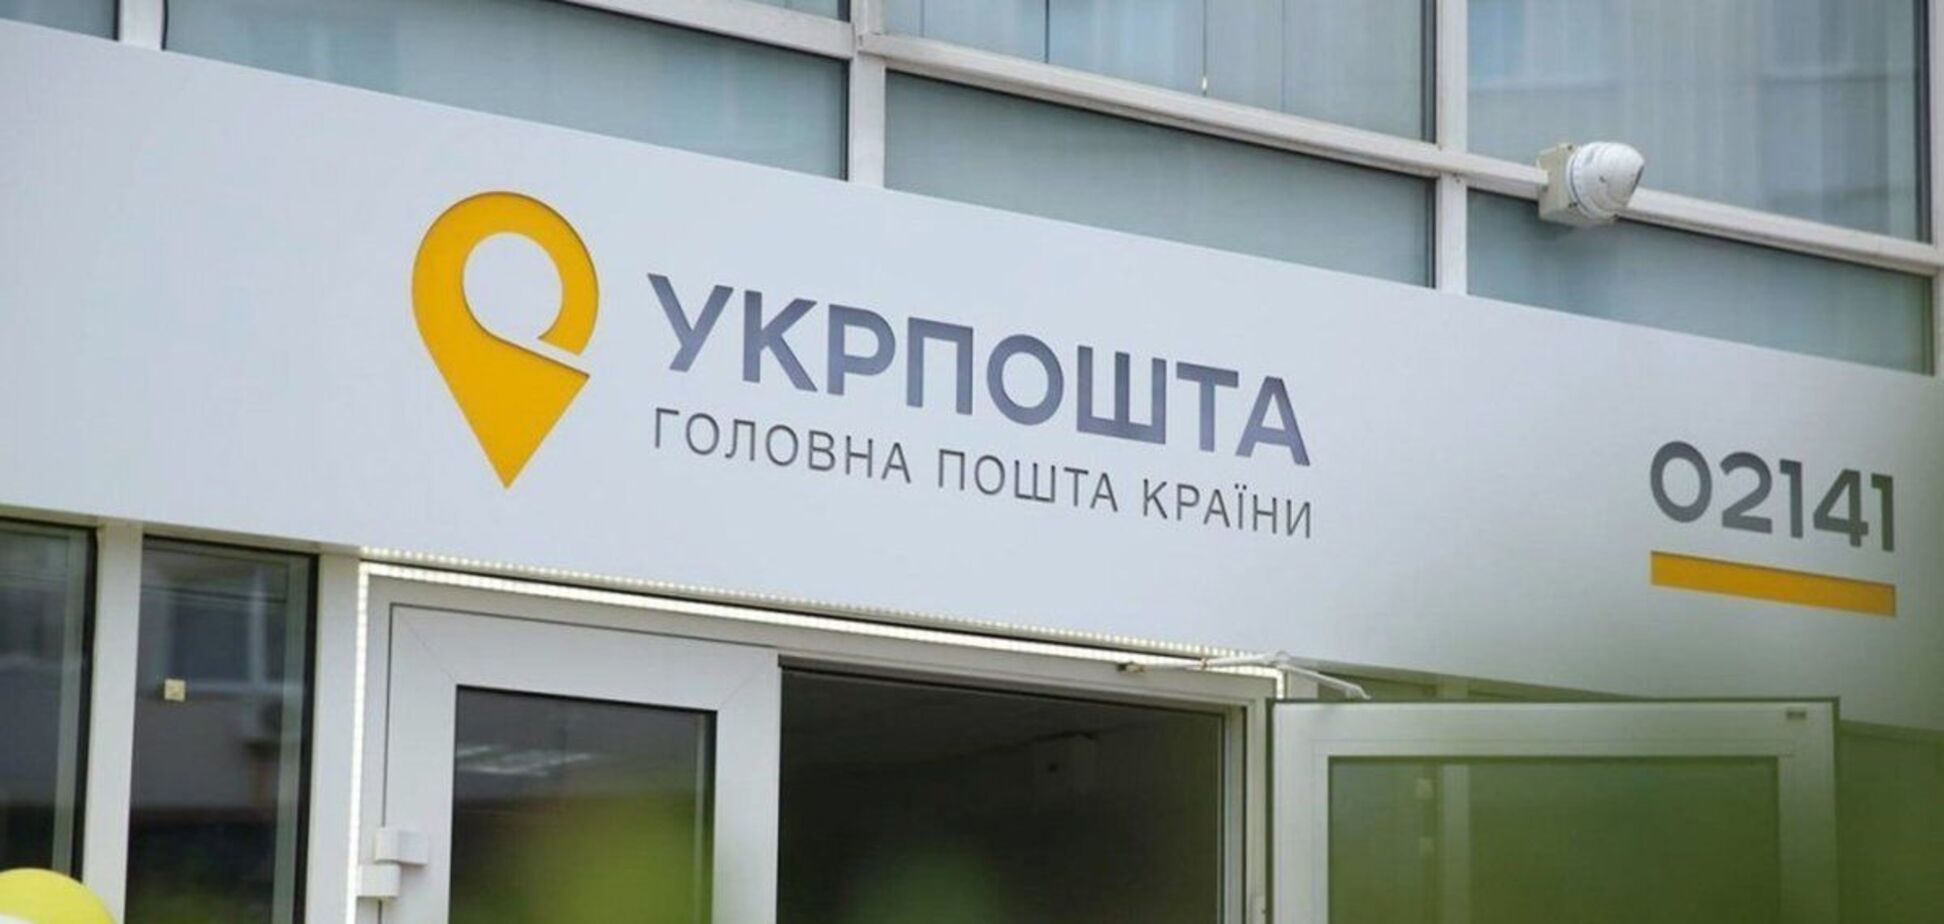 В Кривом Роге работница 'Укрпочты' отказалась обслуживать клиента на украинском. Видео скандала